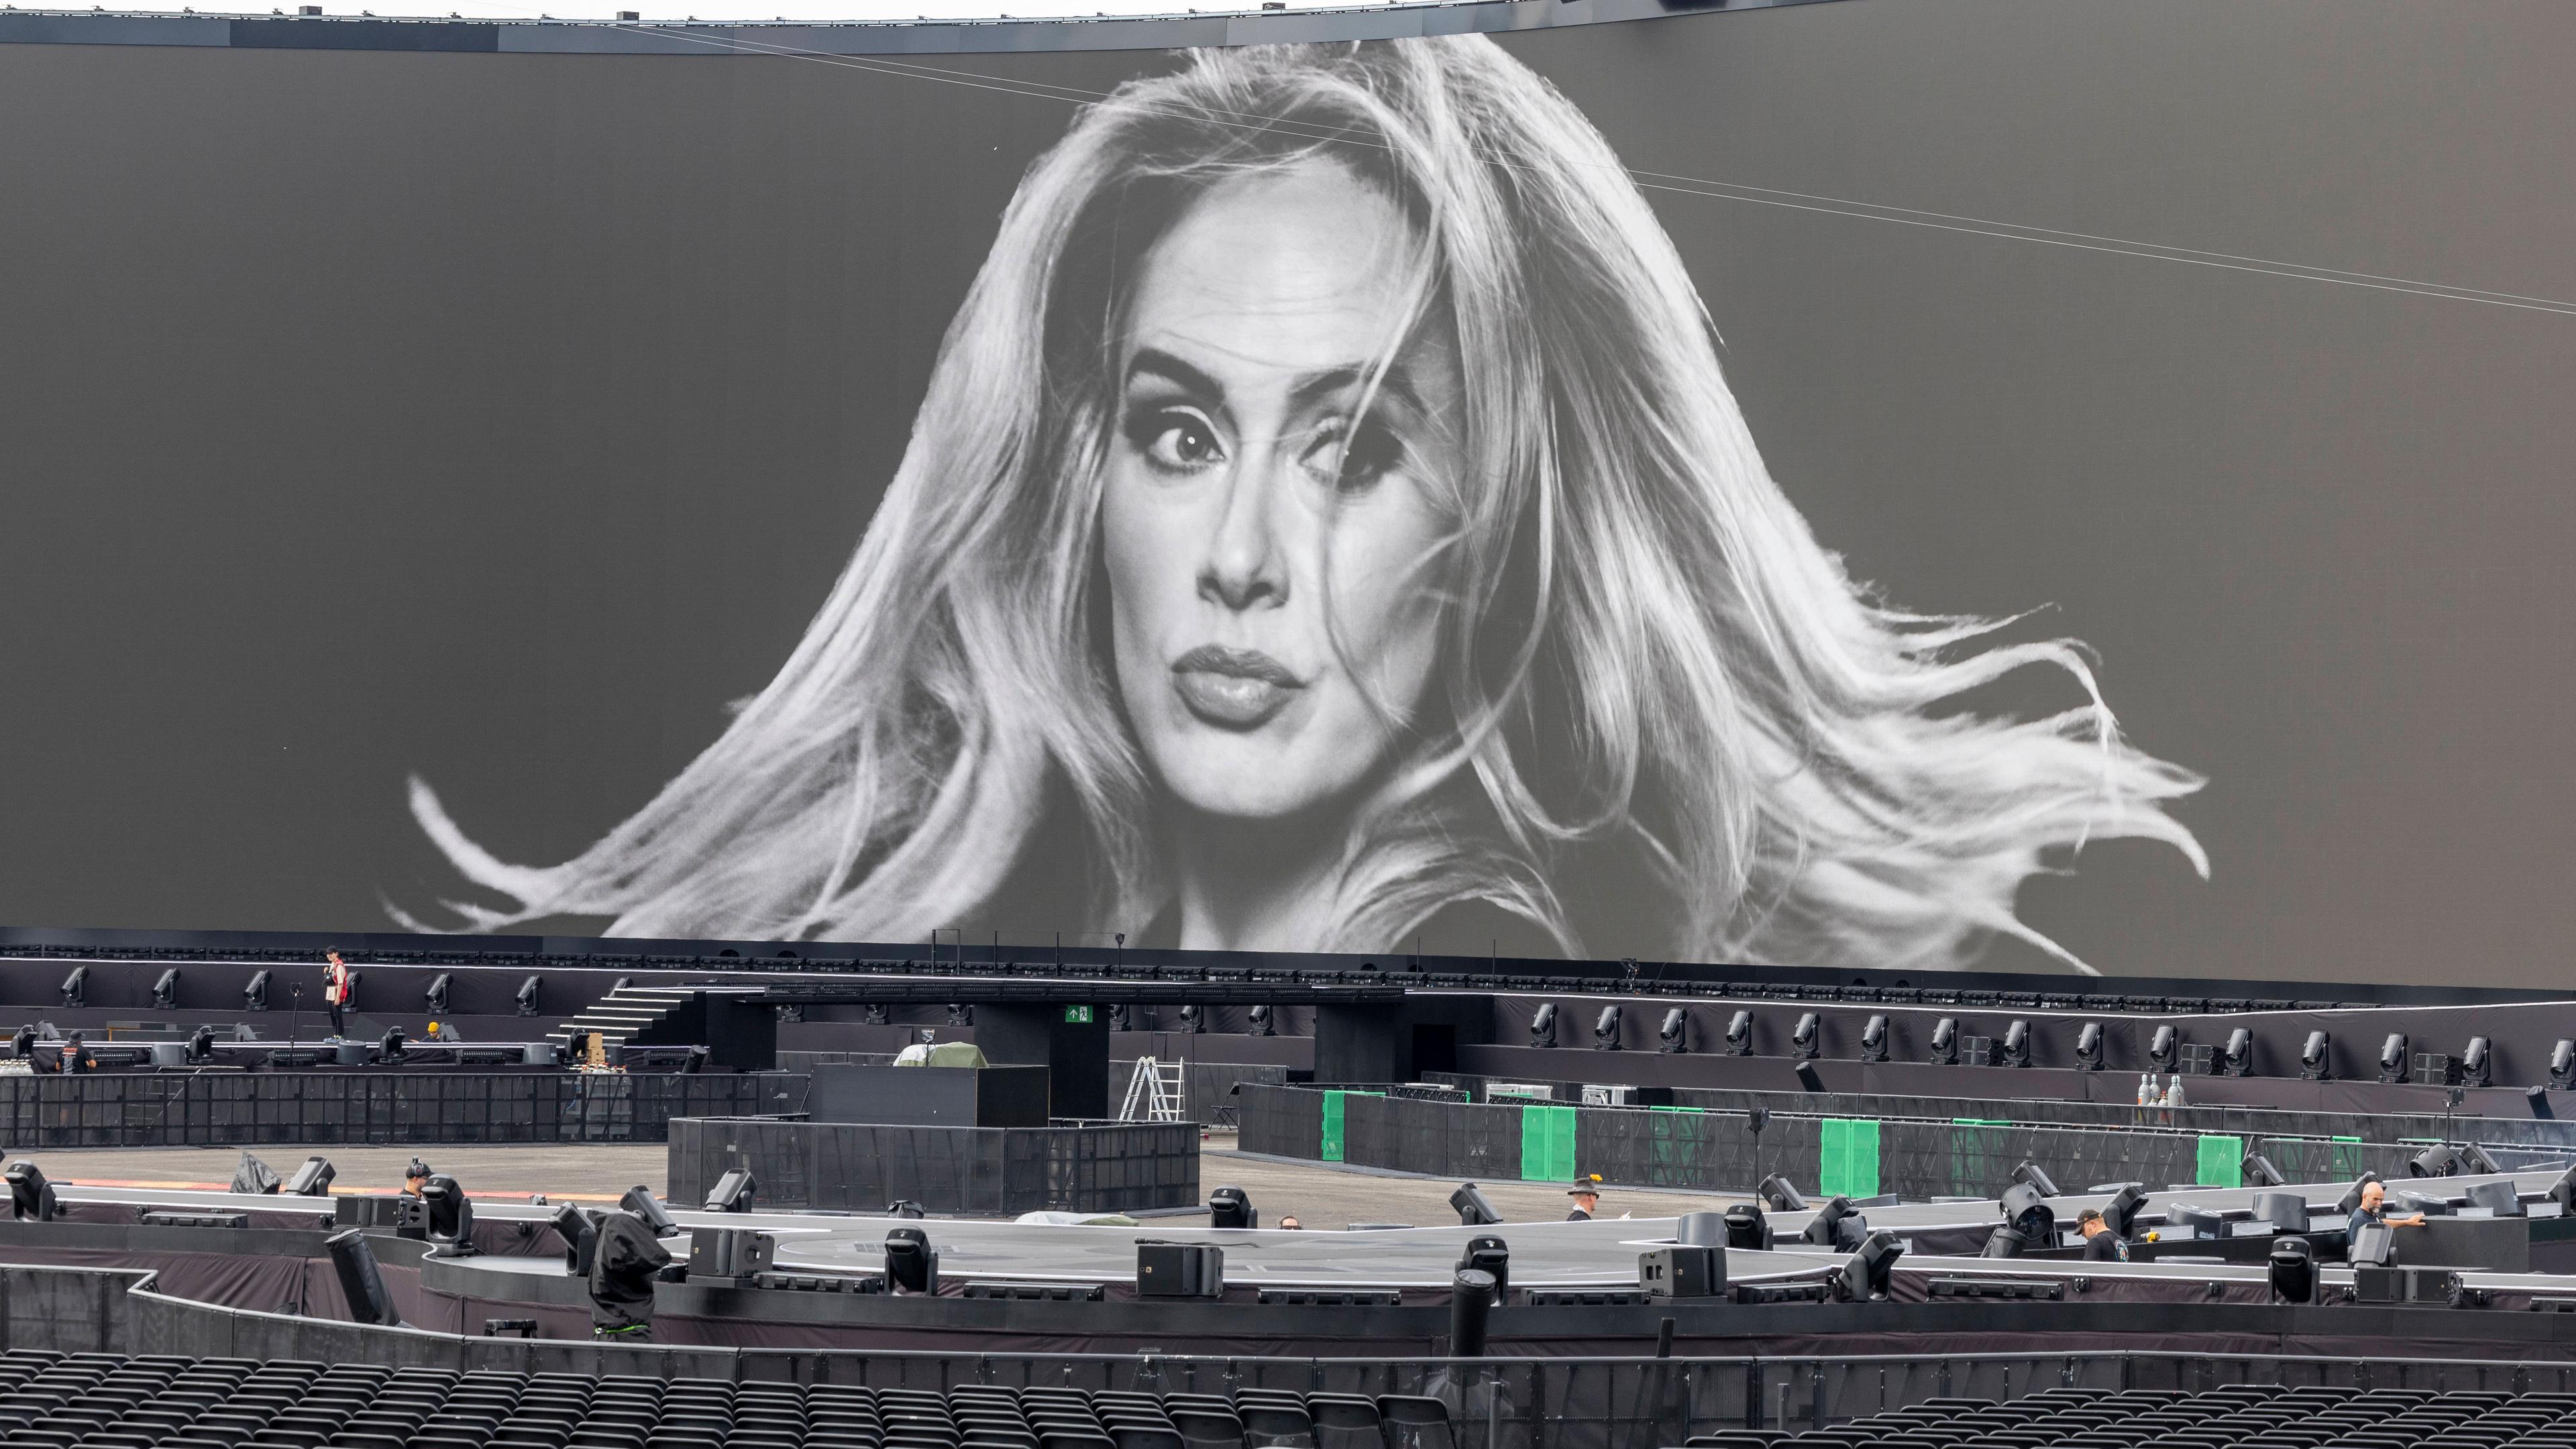 Presserundgang auf dem Adele Veranstaltungsgelände in der Adele Arena und Adele World auf dem Messegelände in München